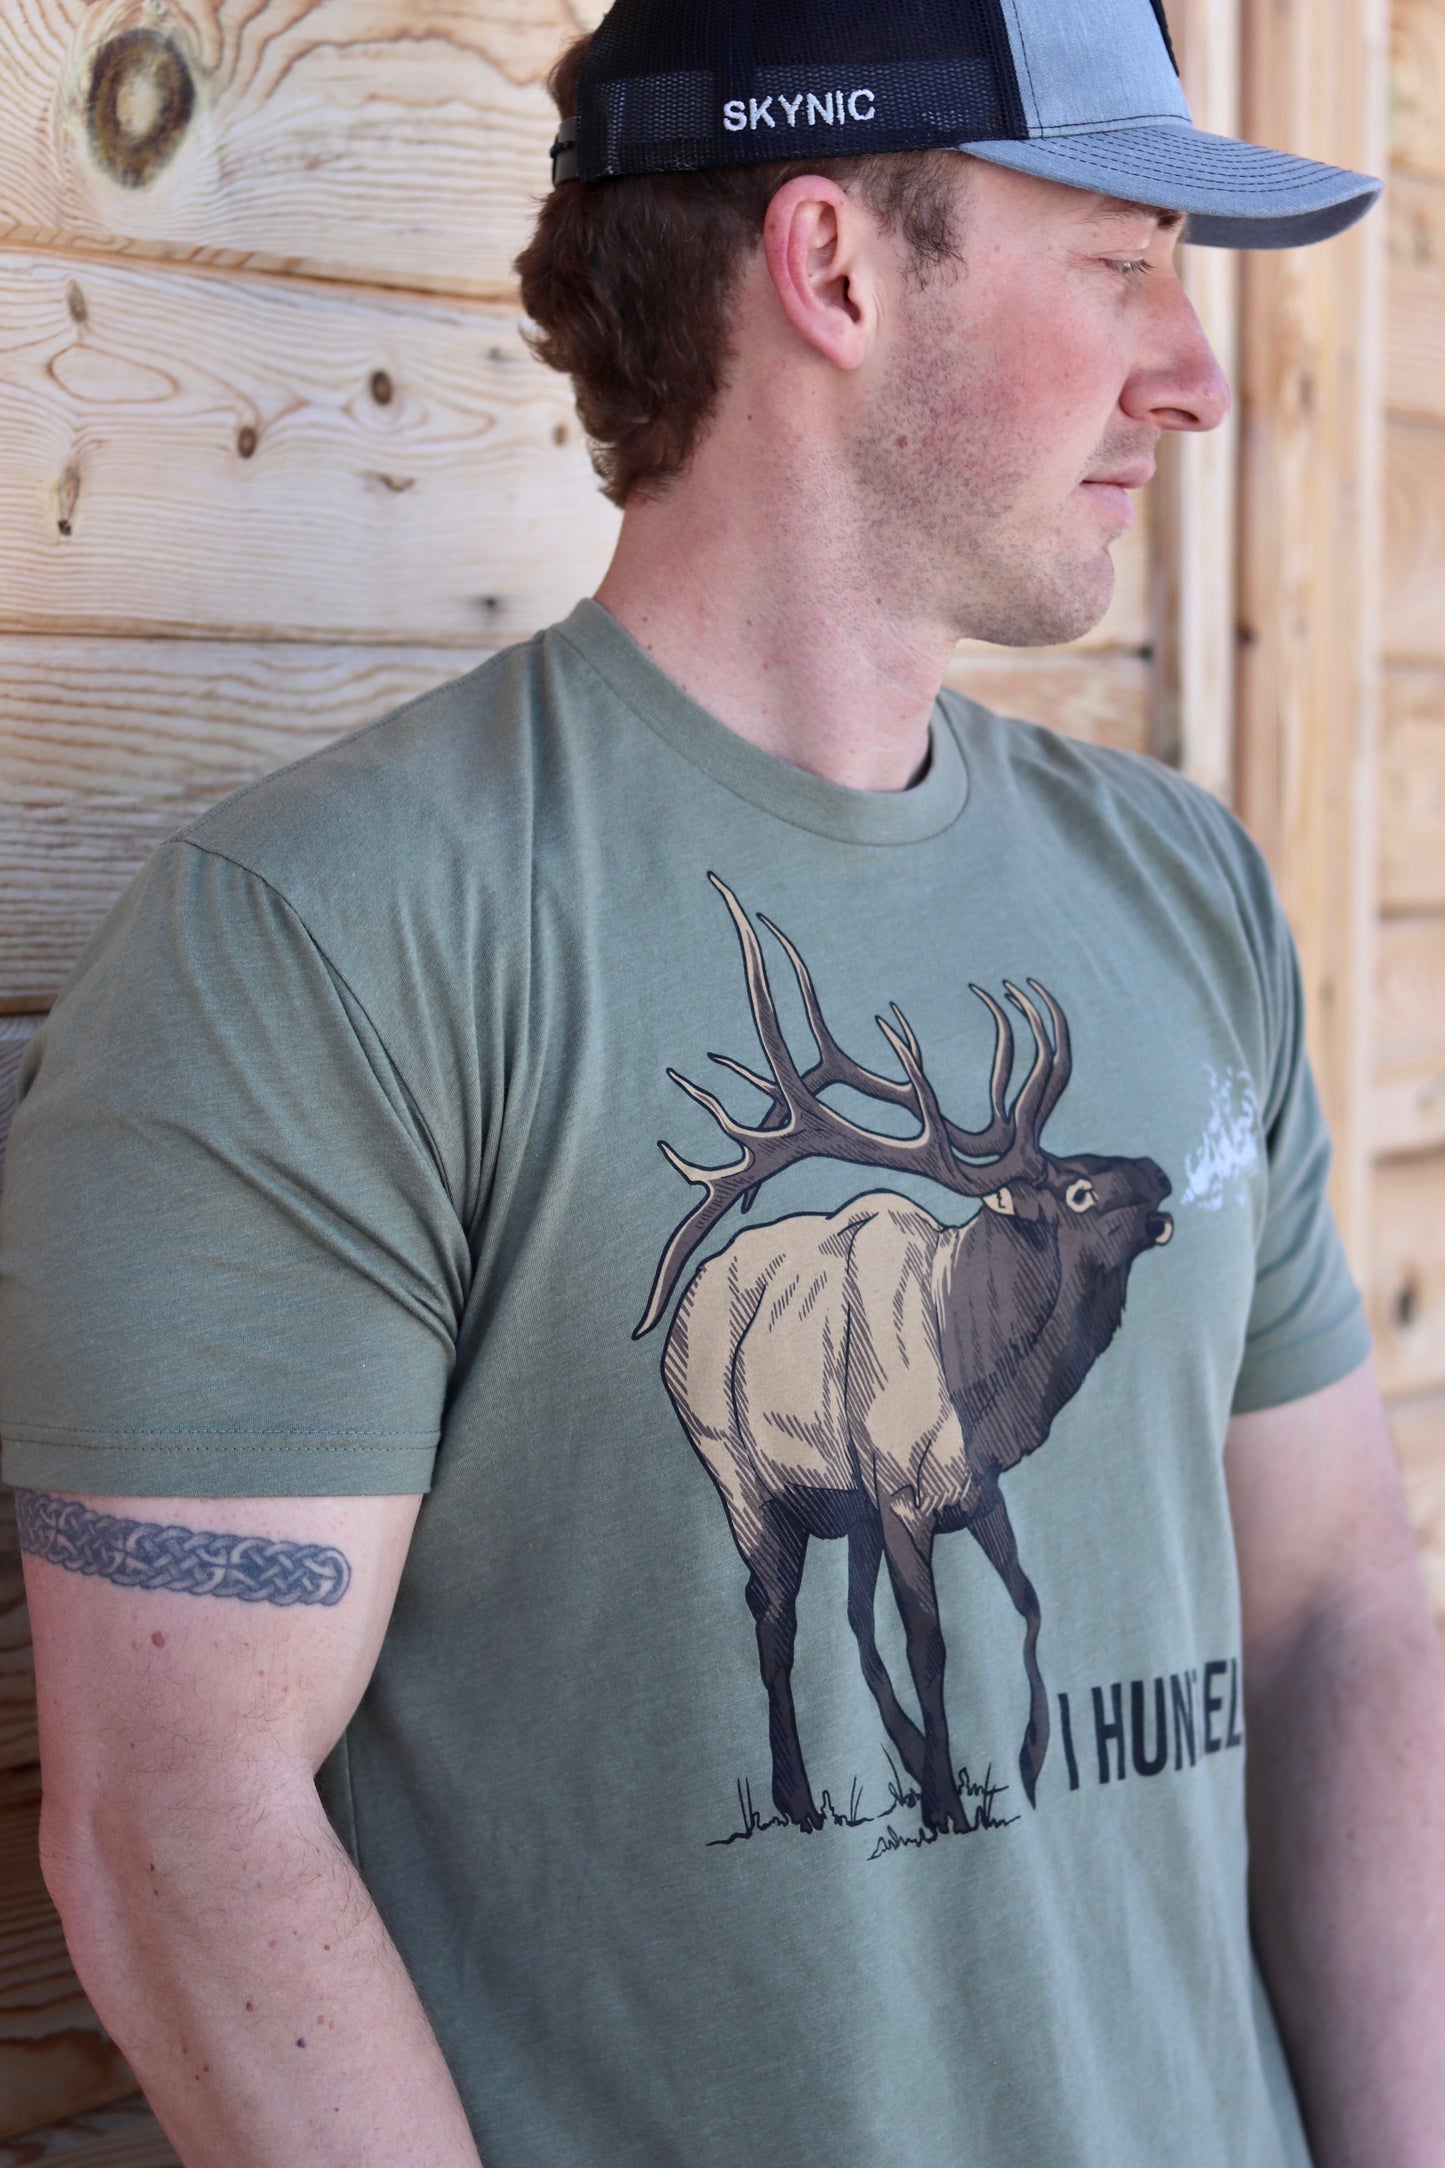 I Hunt Elk T-Shirt